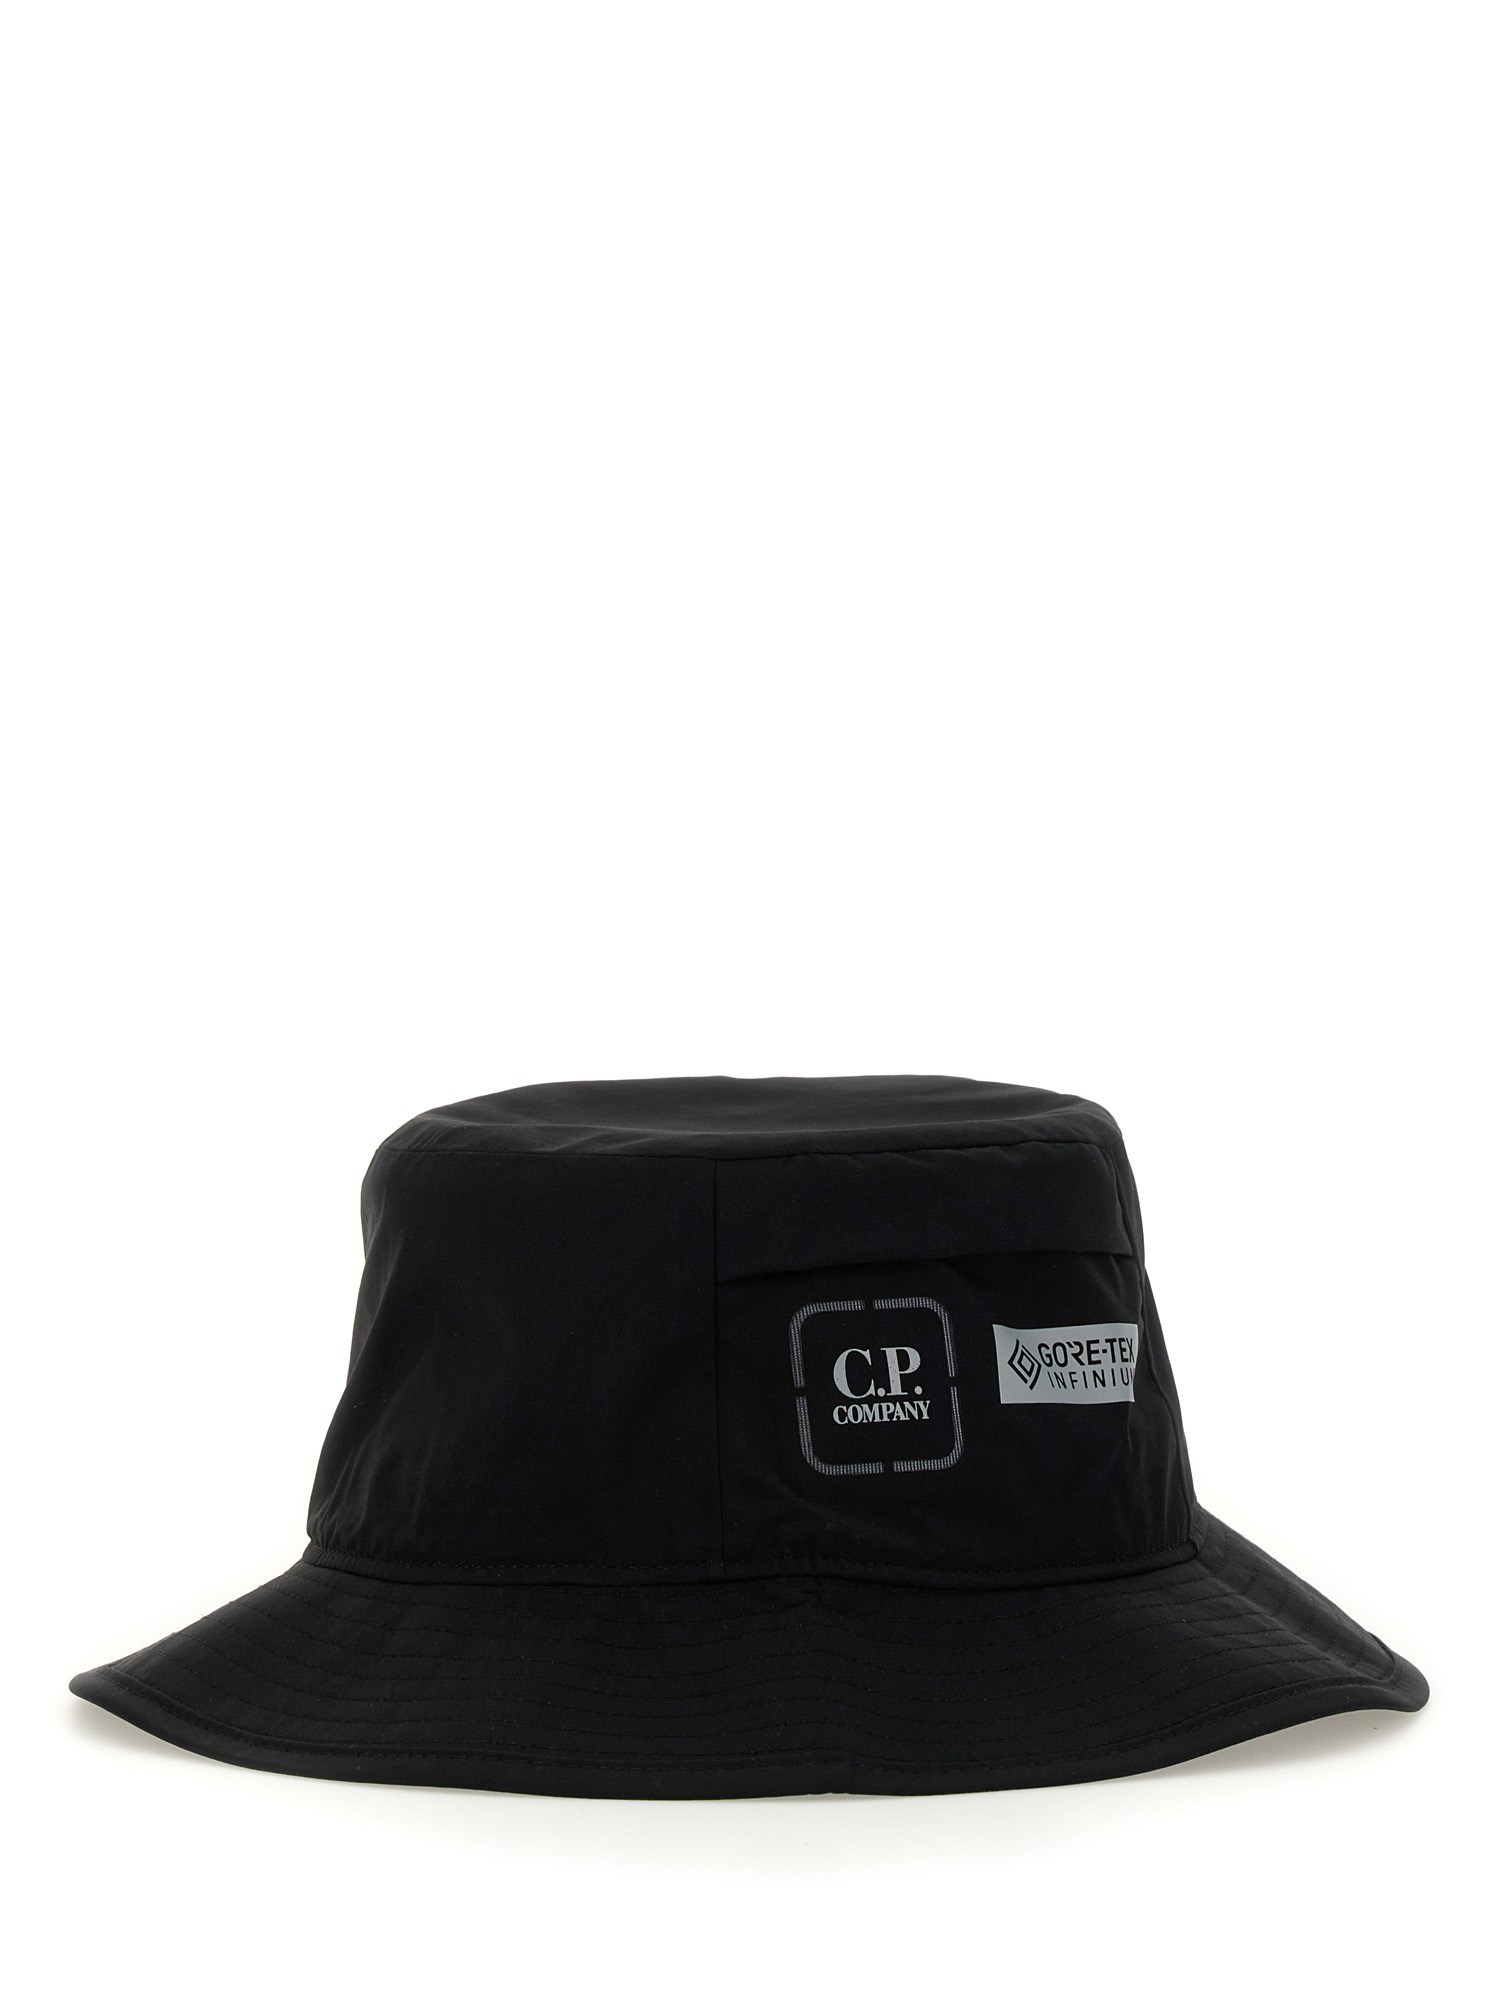 c.p. company nylon hat